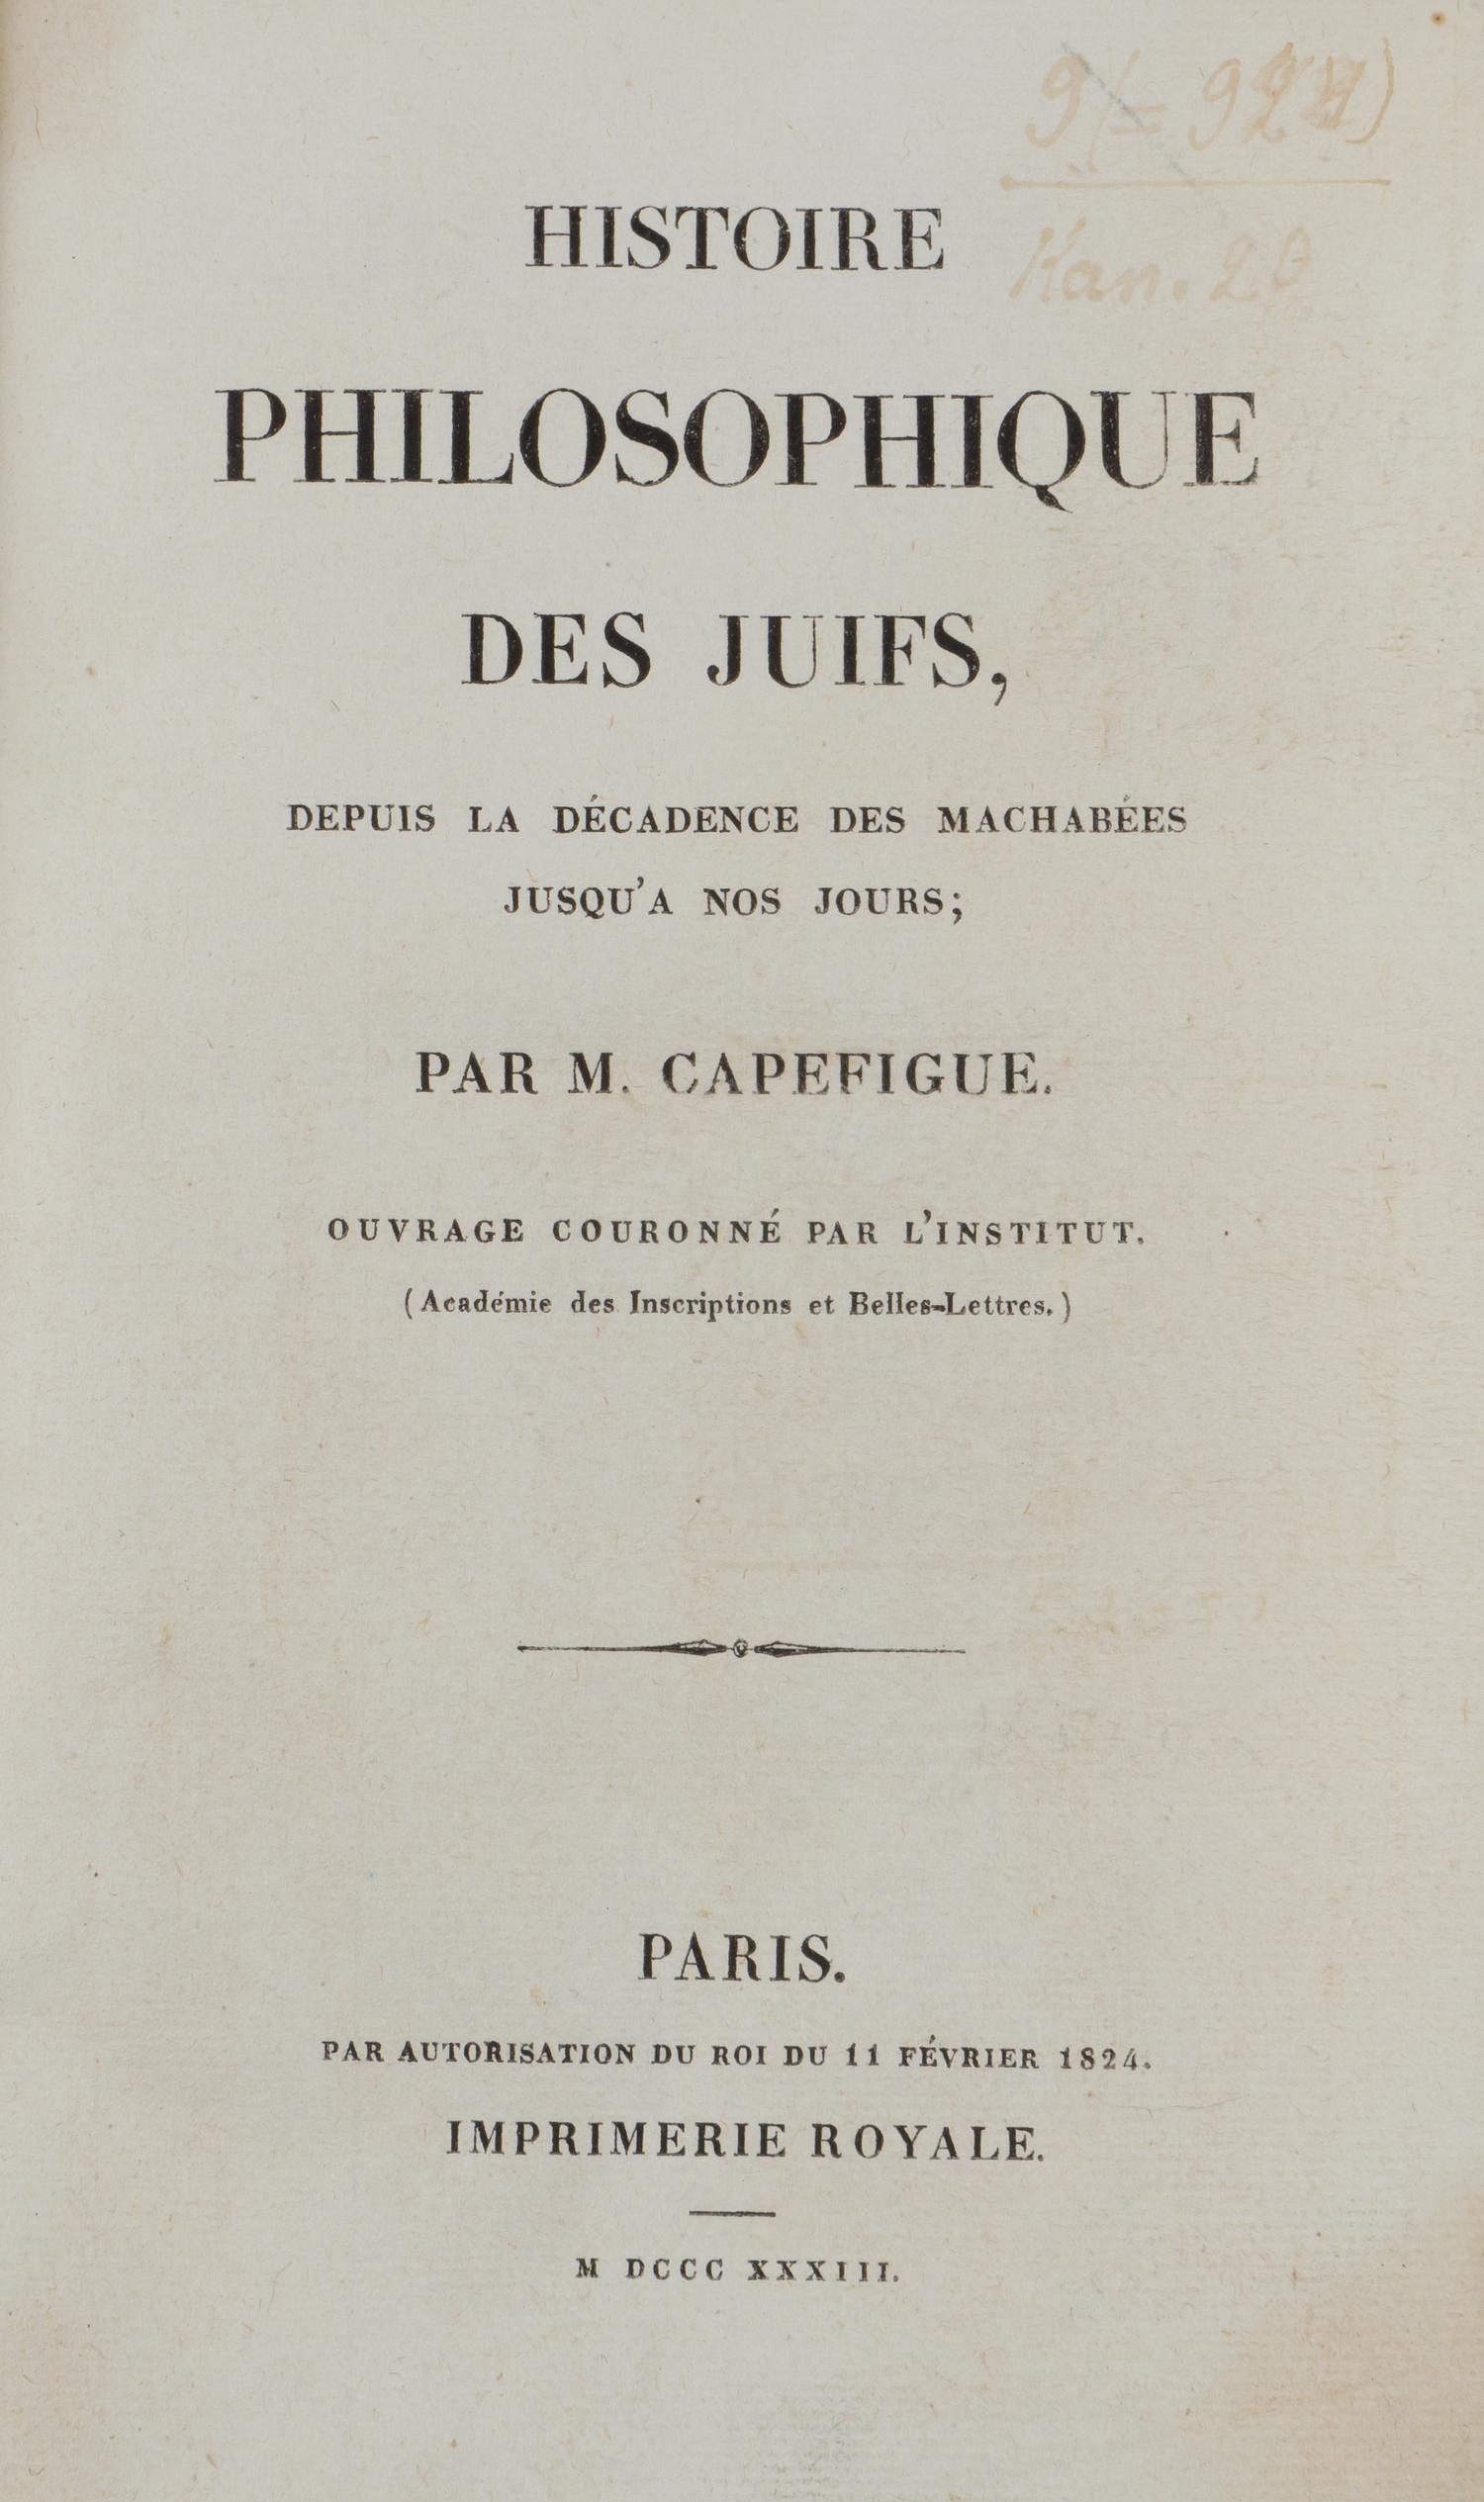 История философии евреев (Histoire philosophique des juifs) (Париж, 1833).